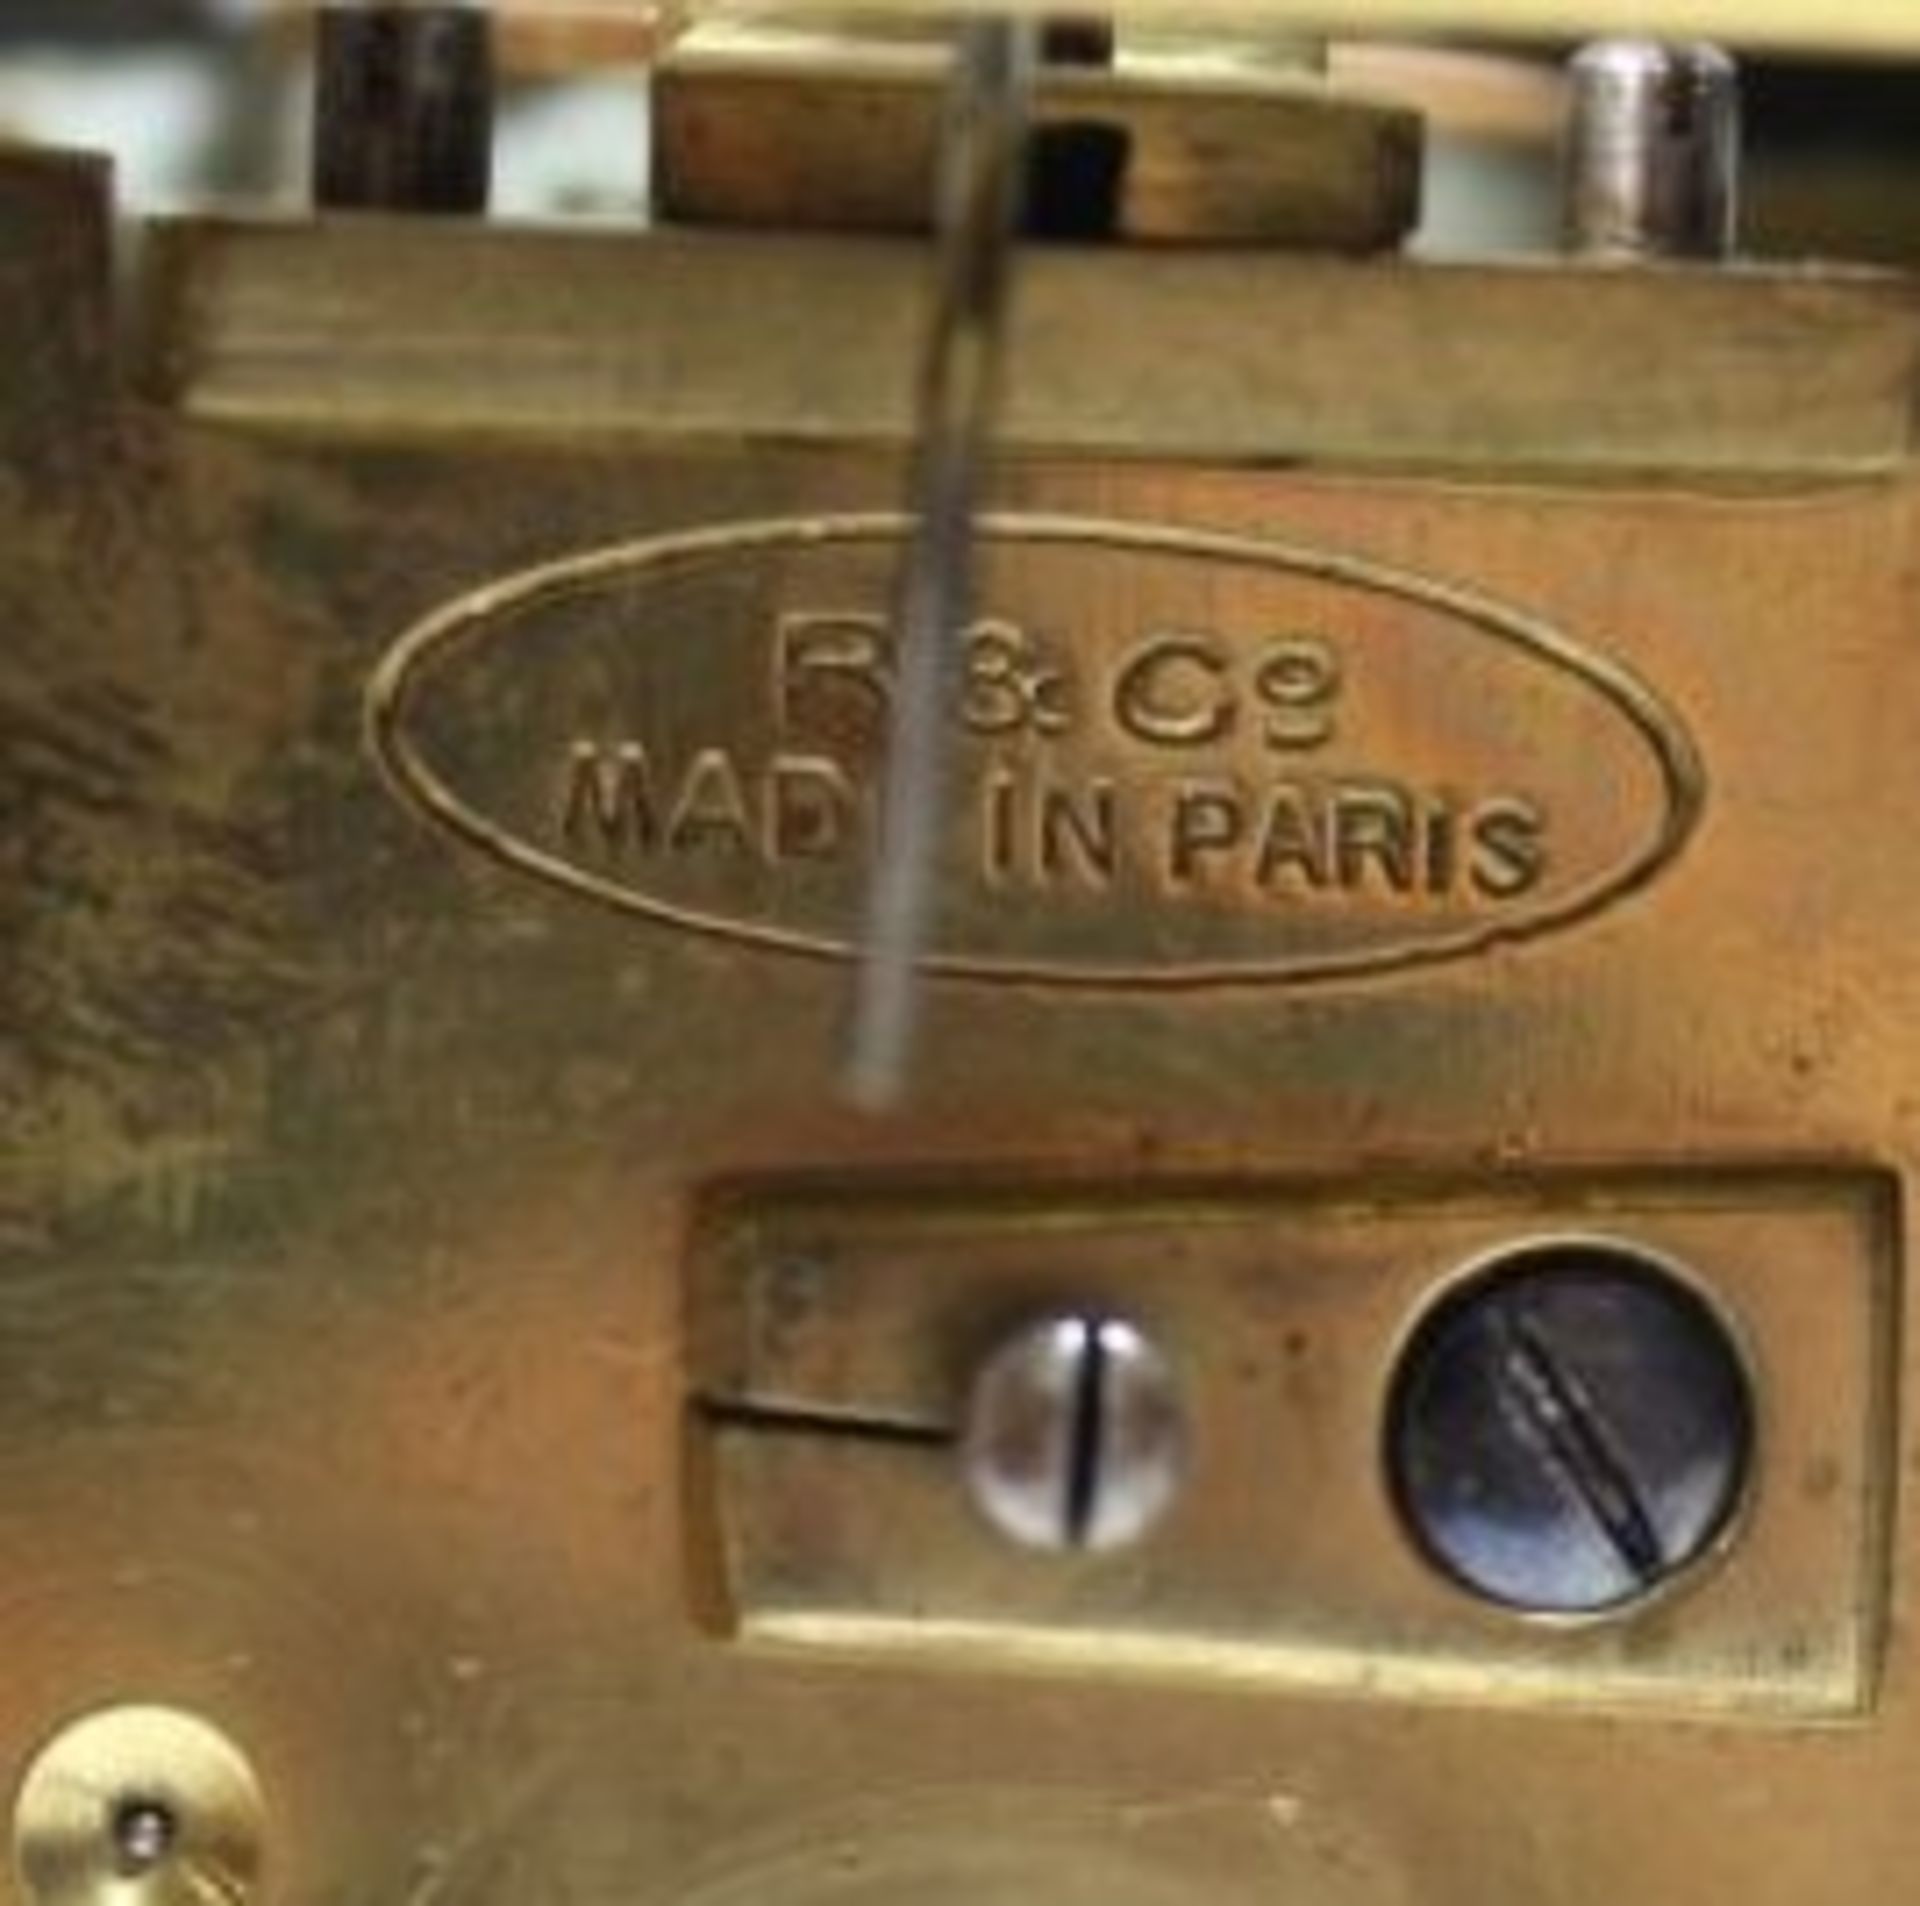 *rundum verglaste Reiseuhr, Werk sign. "R.& Co. Paris", verglastes Messinggehäuse mit Tragbügel, - Bild 5 aus 5